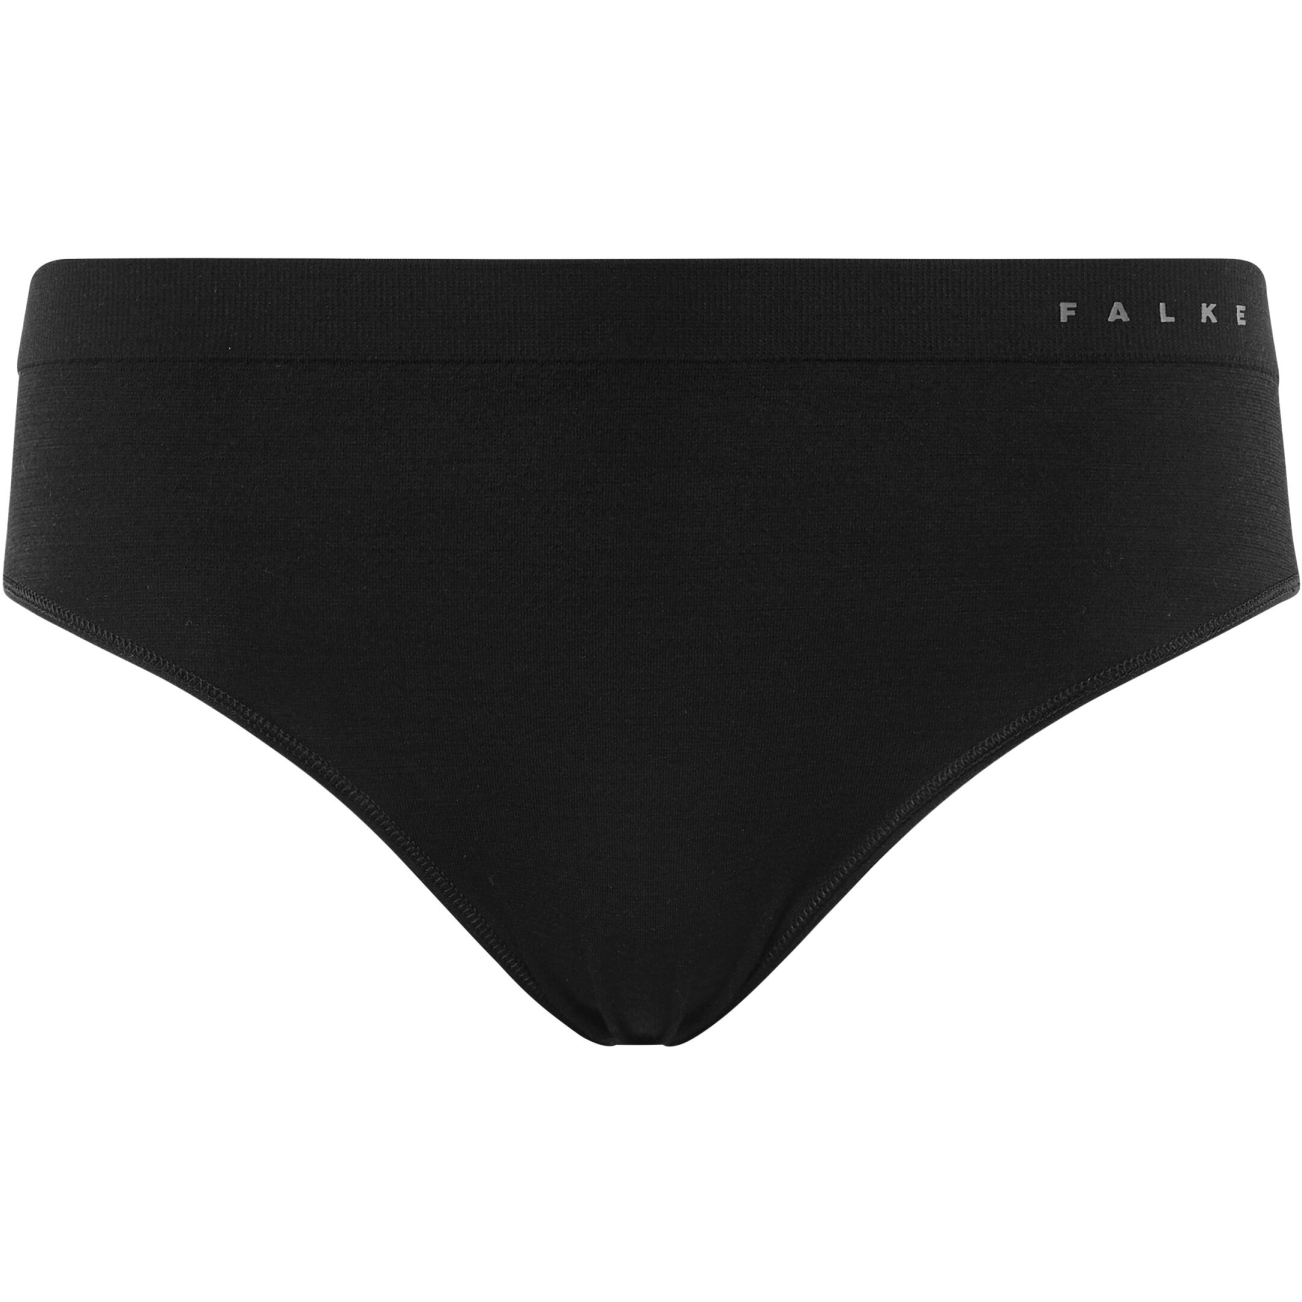 Picture of Falke Wool-Tech Light Panties Women - black 3000 (33462)